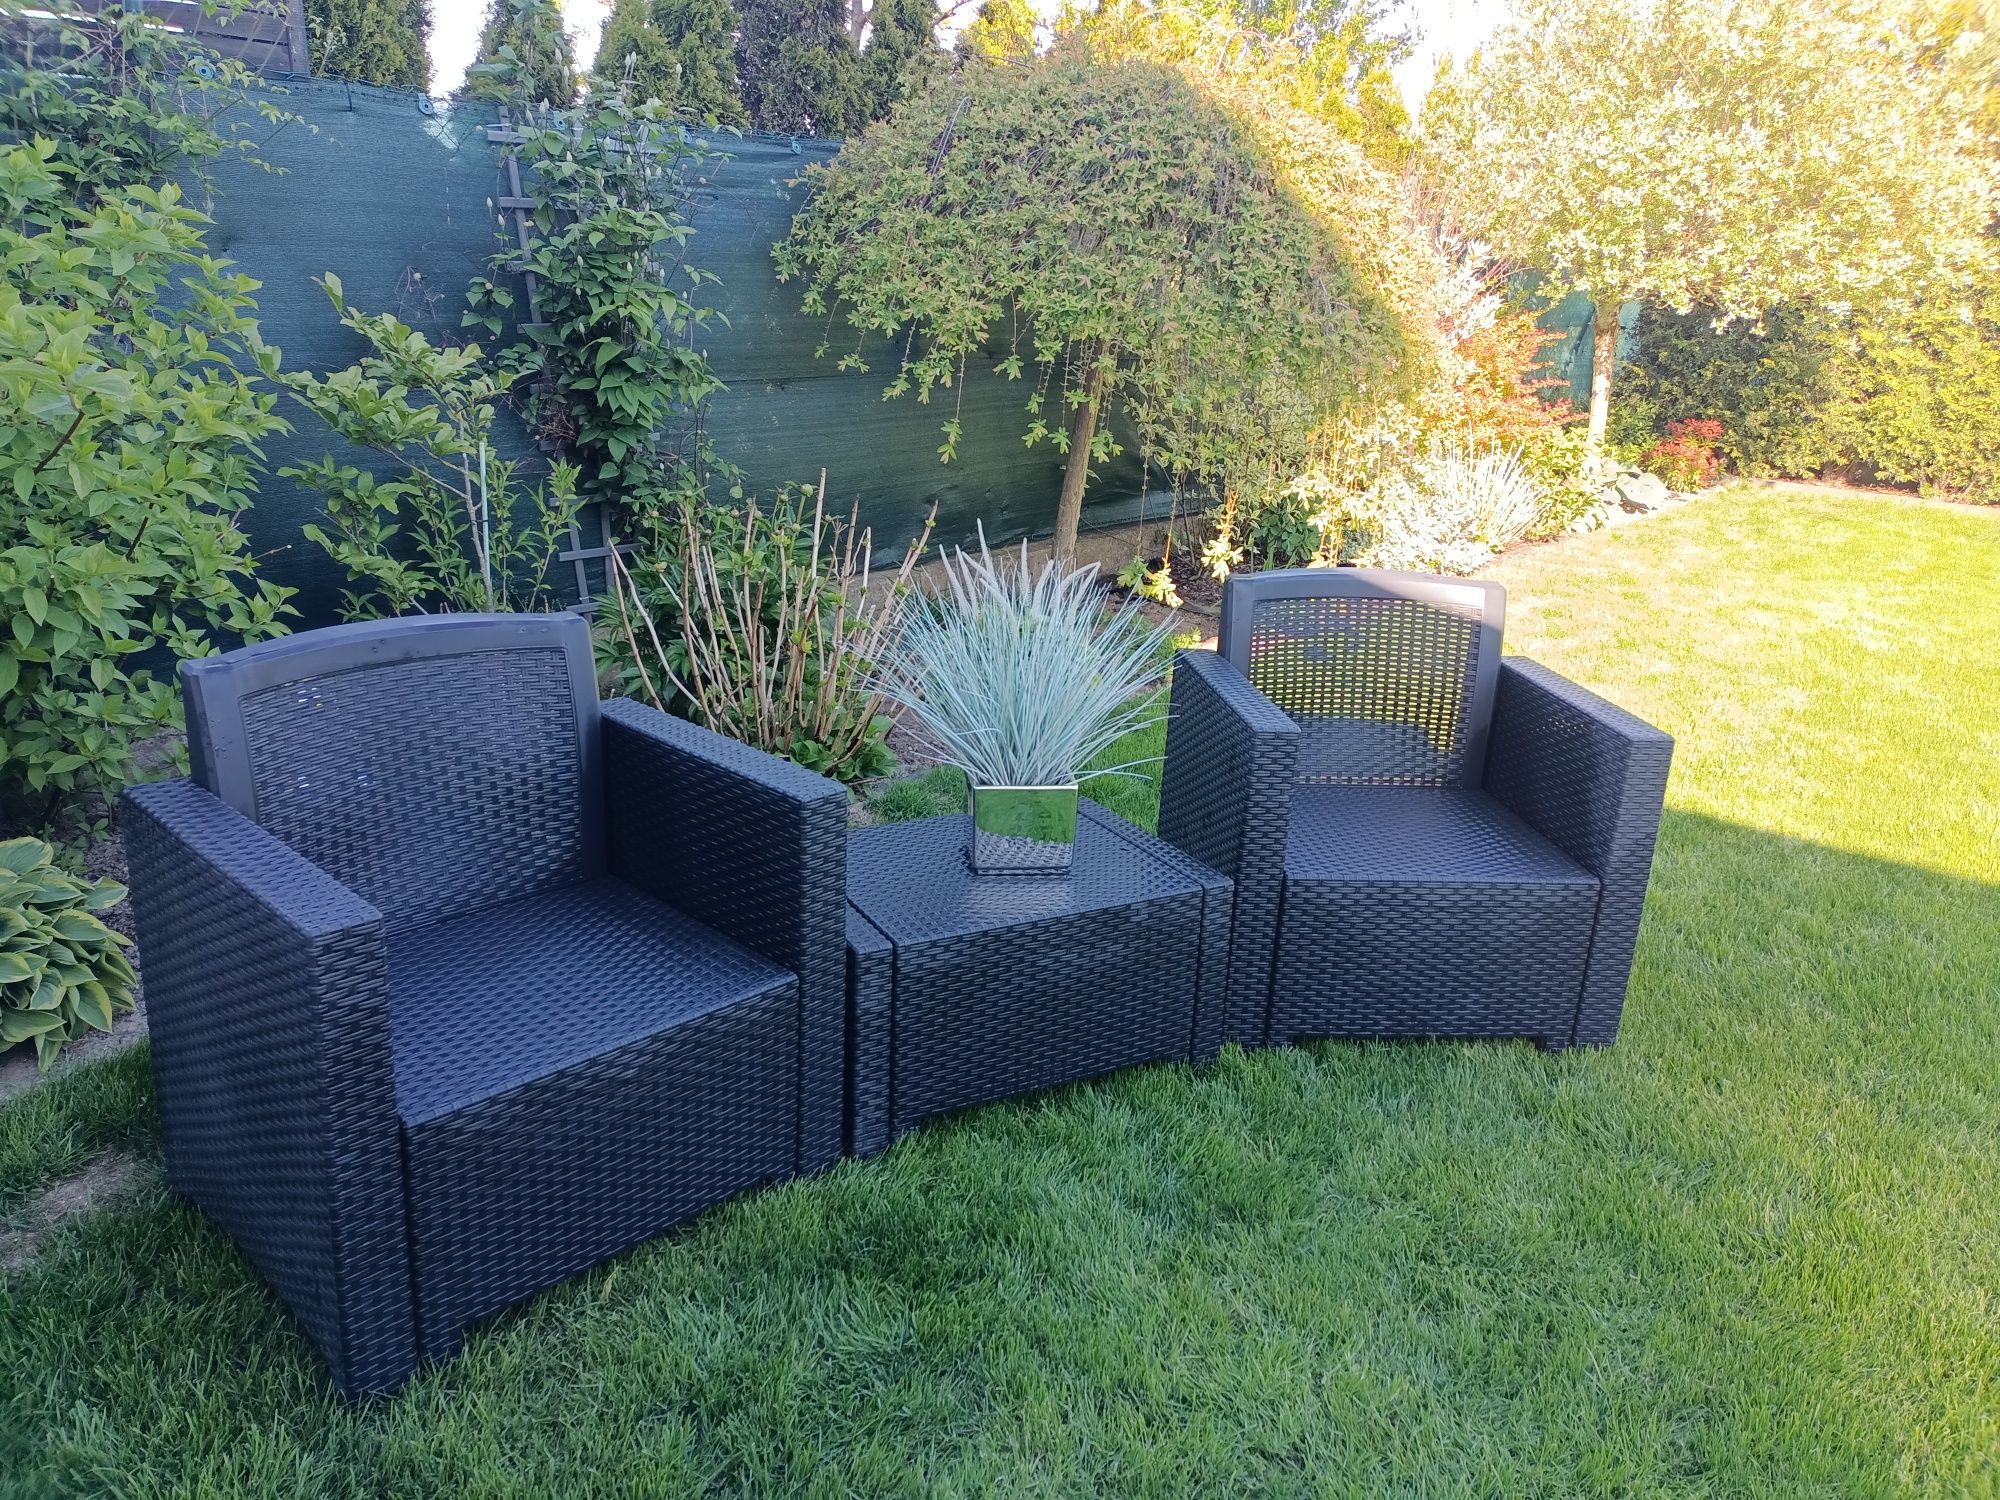 Meble ogrodowe 2 fotele z poduszkami  i stolik